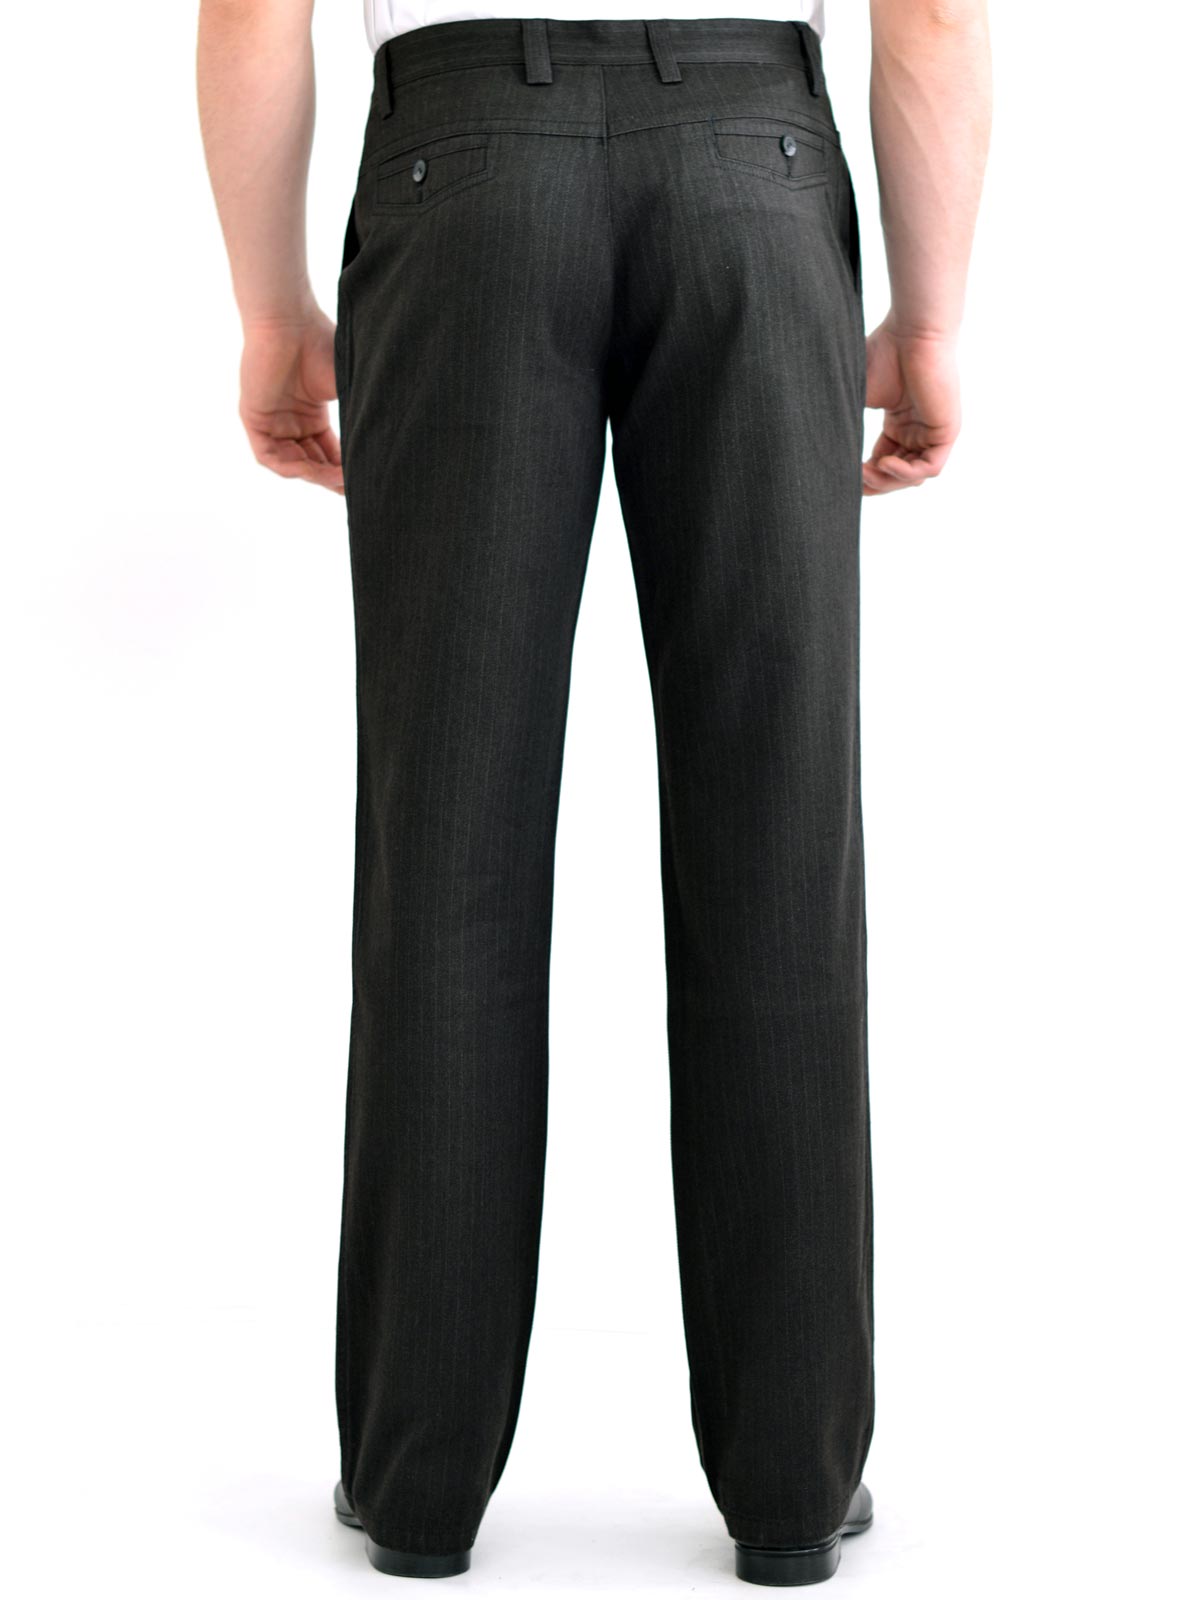 Pantaloni cu dungi siluetă dreaptă - 60104 € 11.25 img2